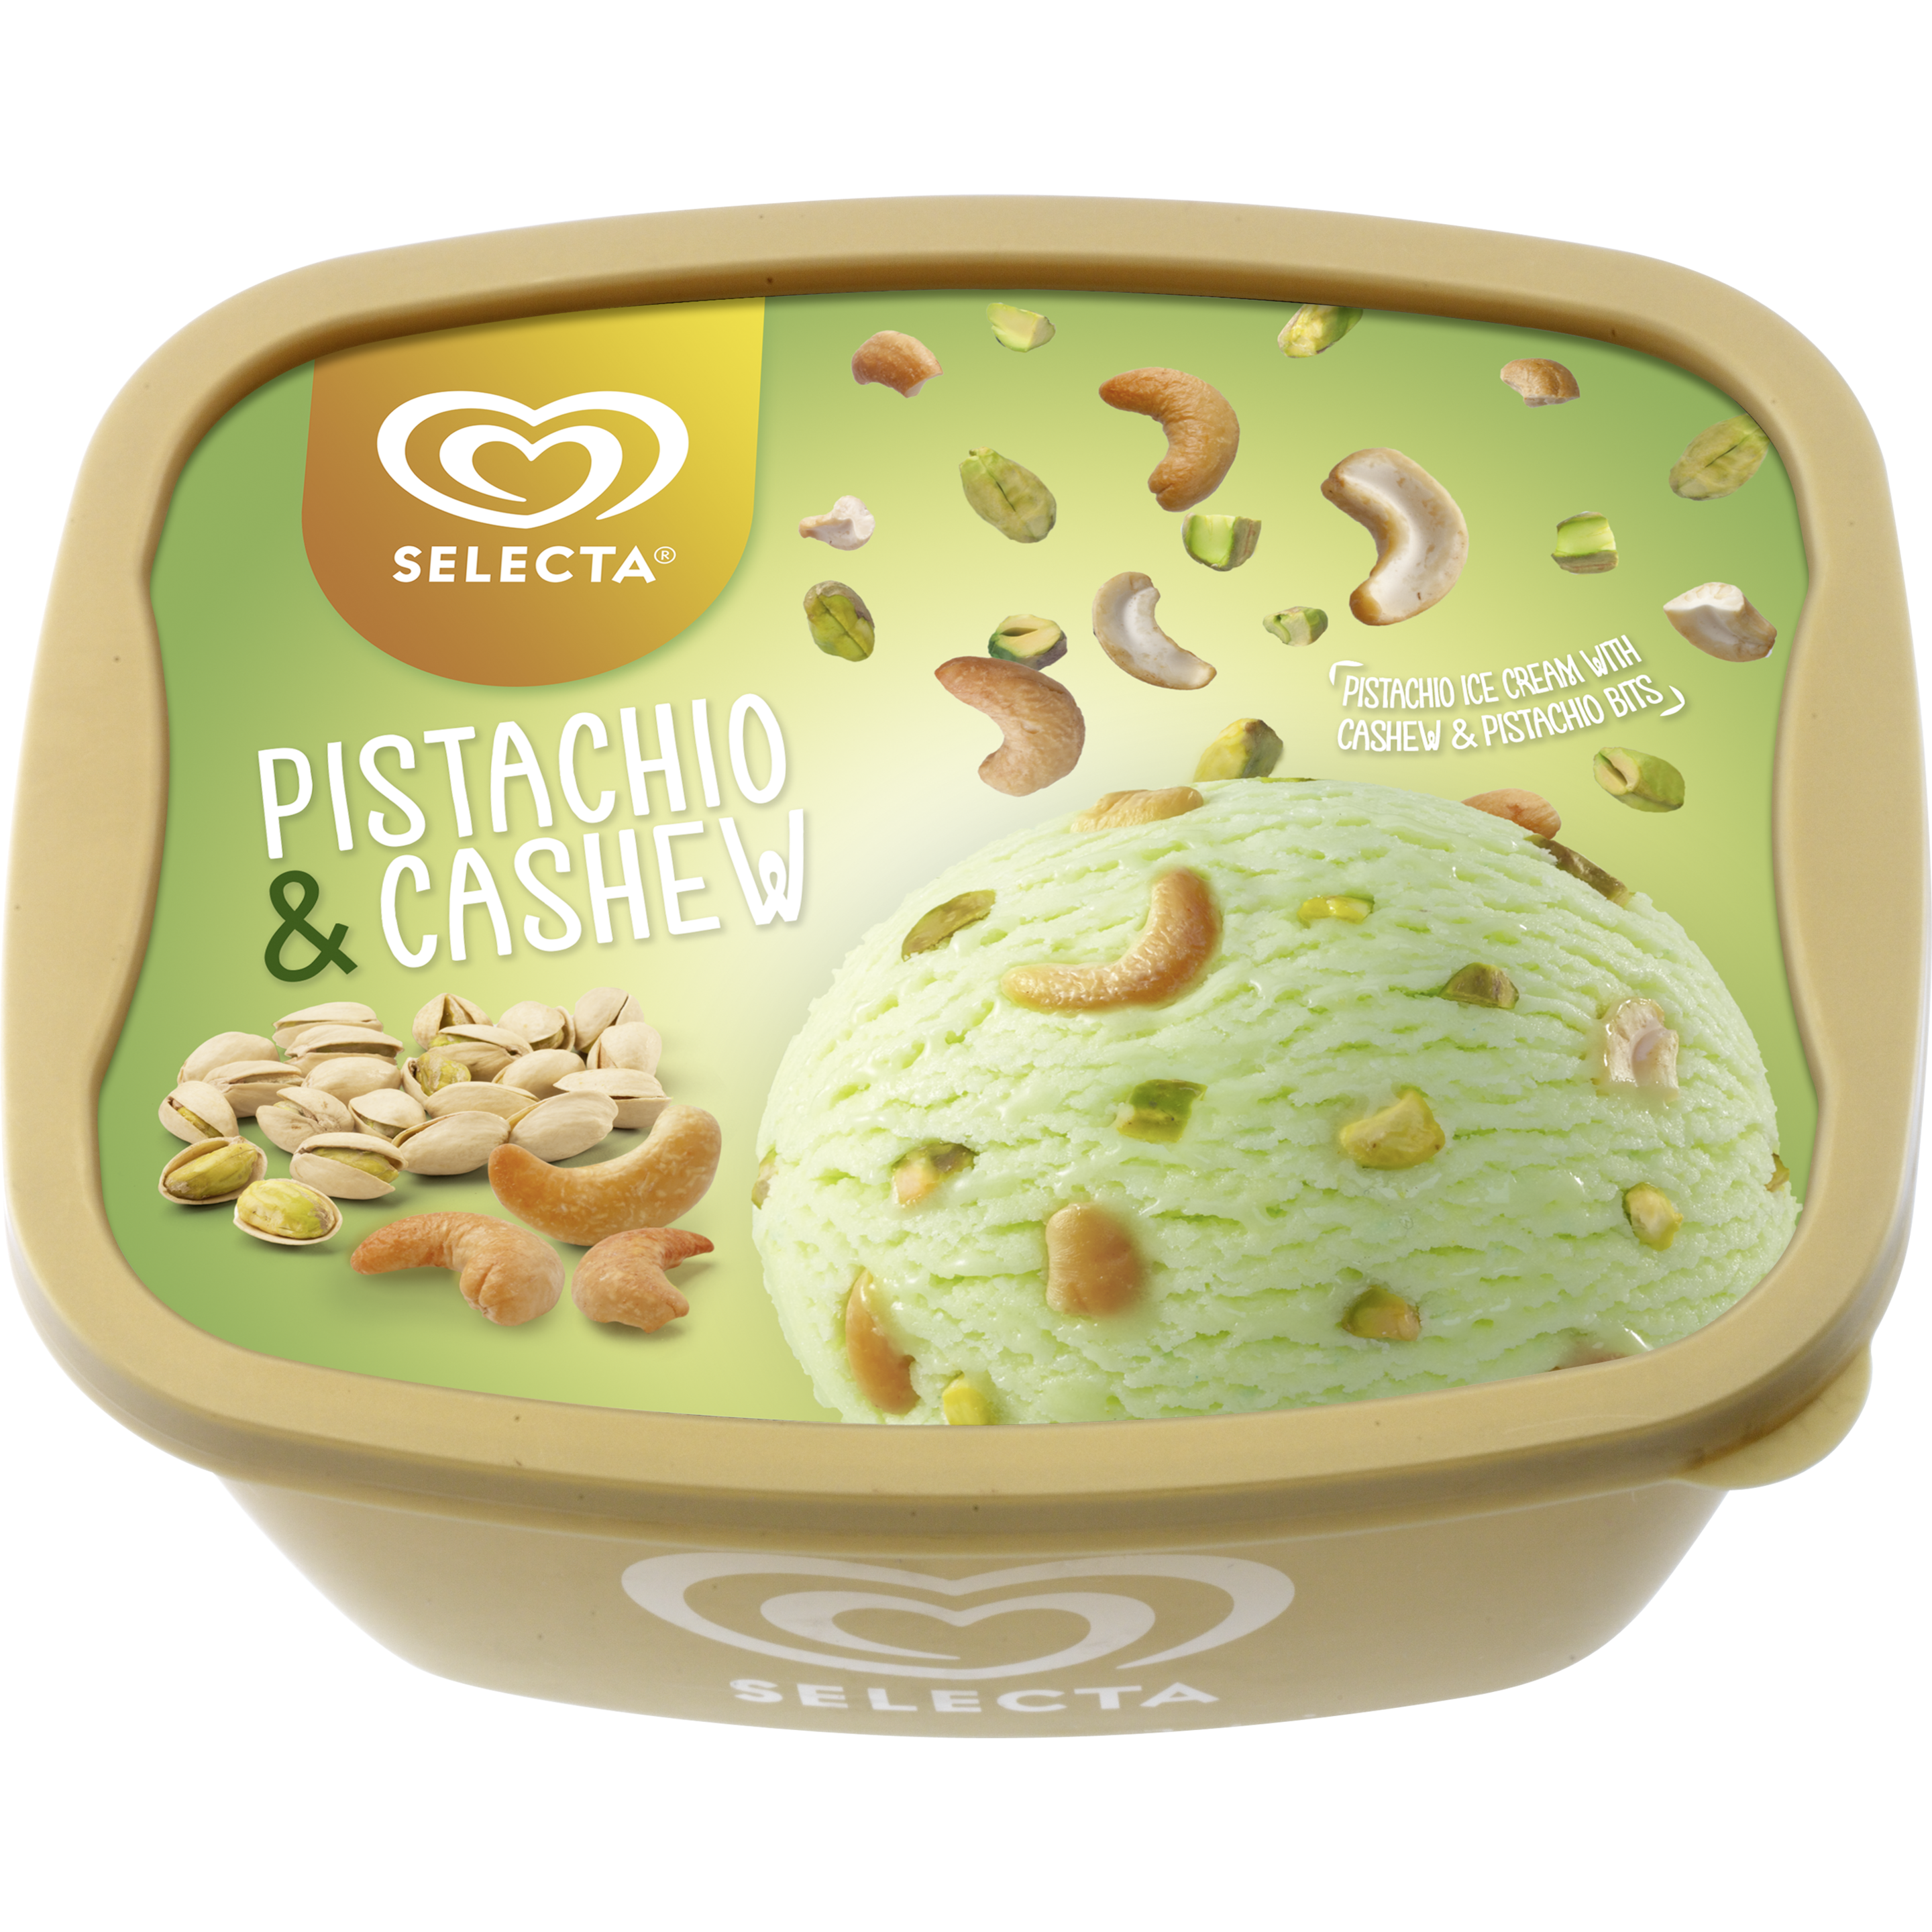 Selecta Pistachio & Cashew